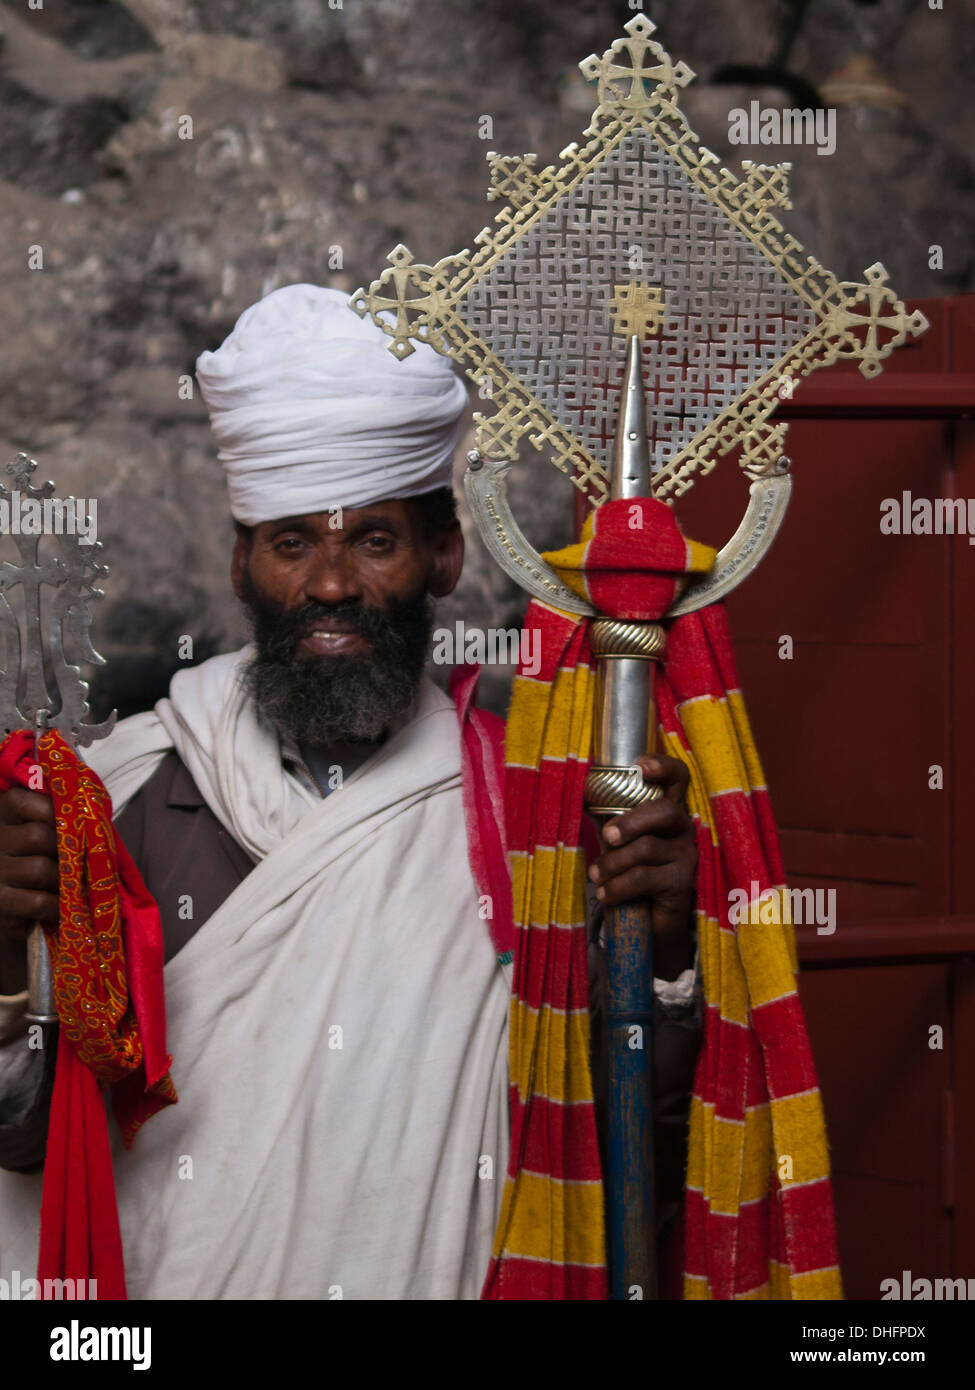 Ethiopian Orthodox Priest holding cross Stock Photo